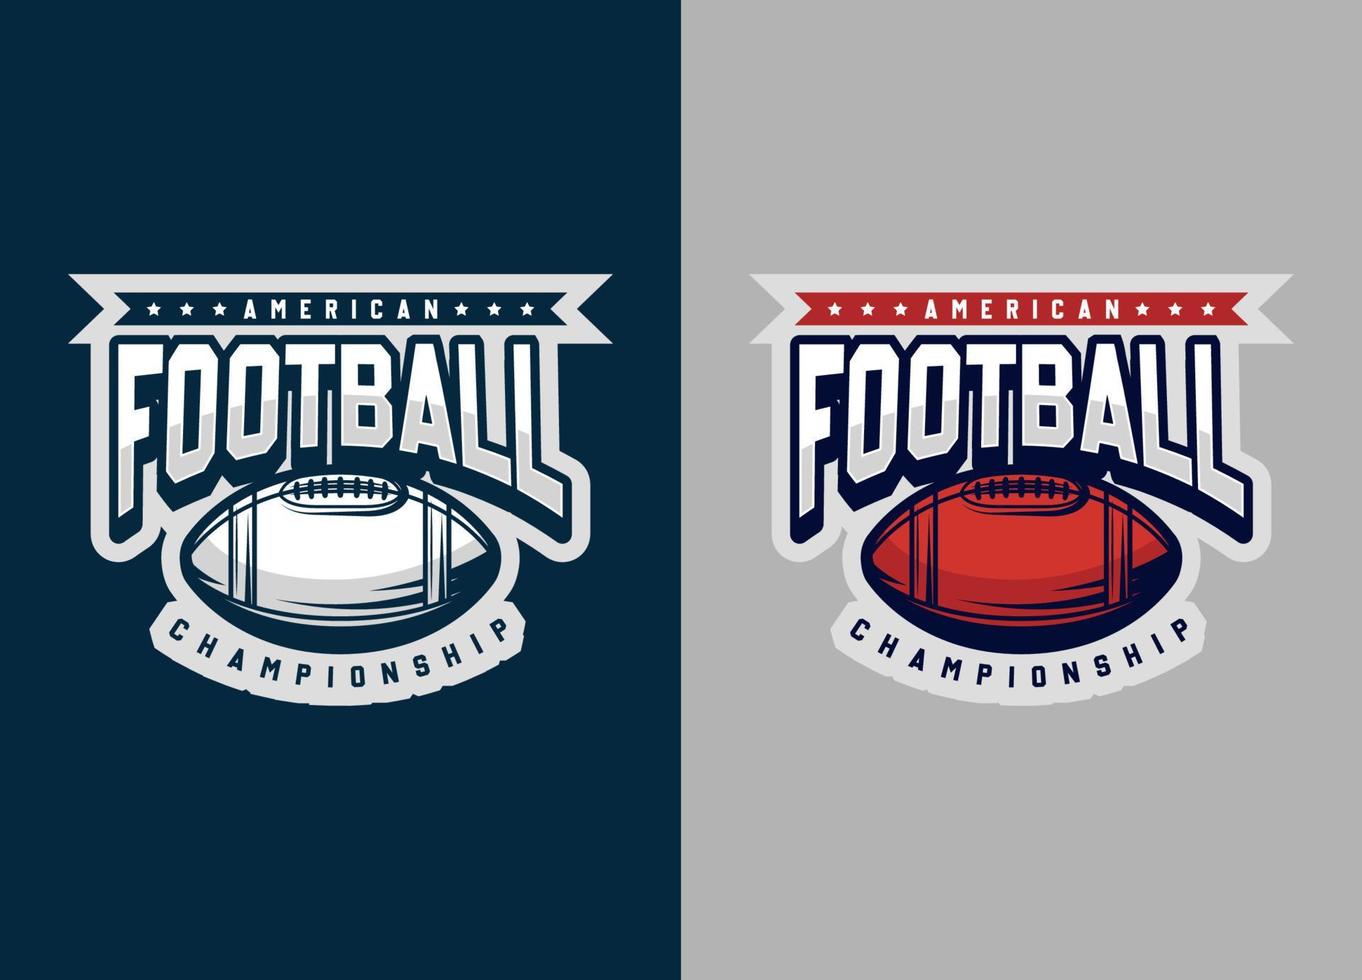 Rugby e calcio logotipo. sport moderno logo e simbolo illustrazione. minimalista squadra sport design. vettore eps 10.